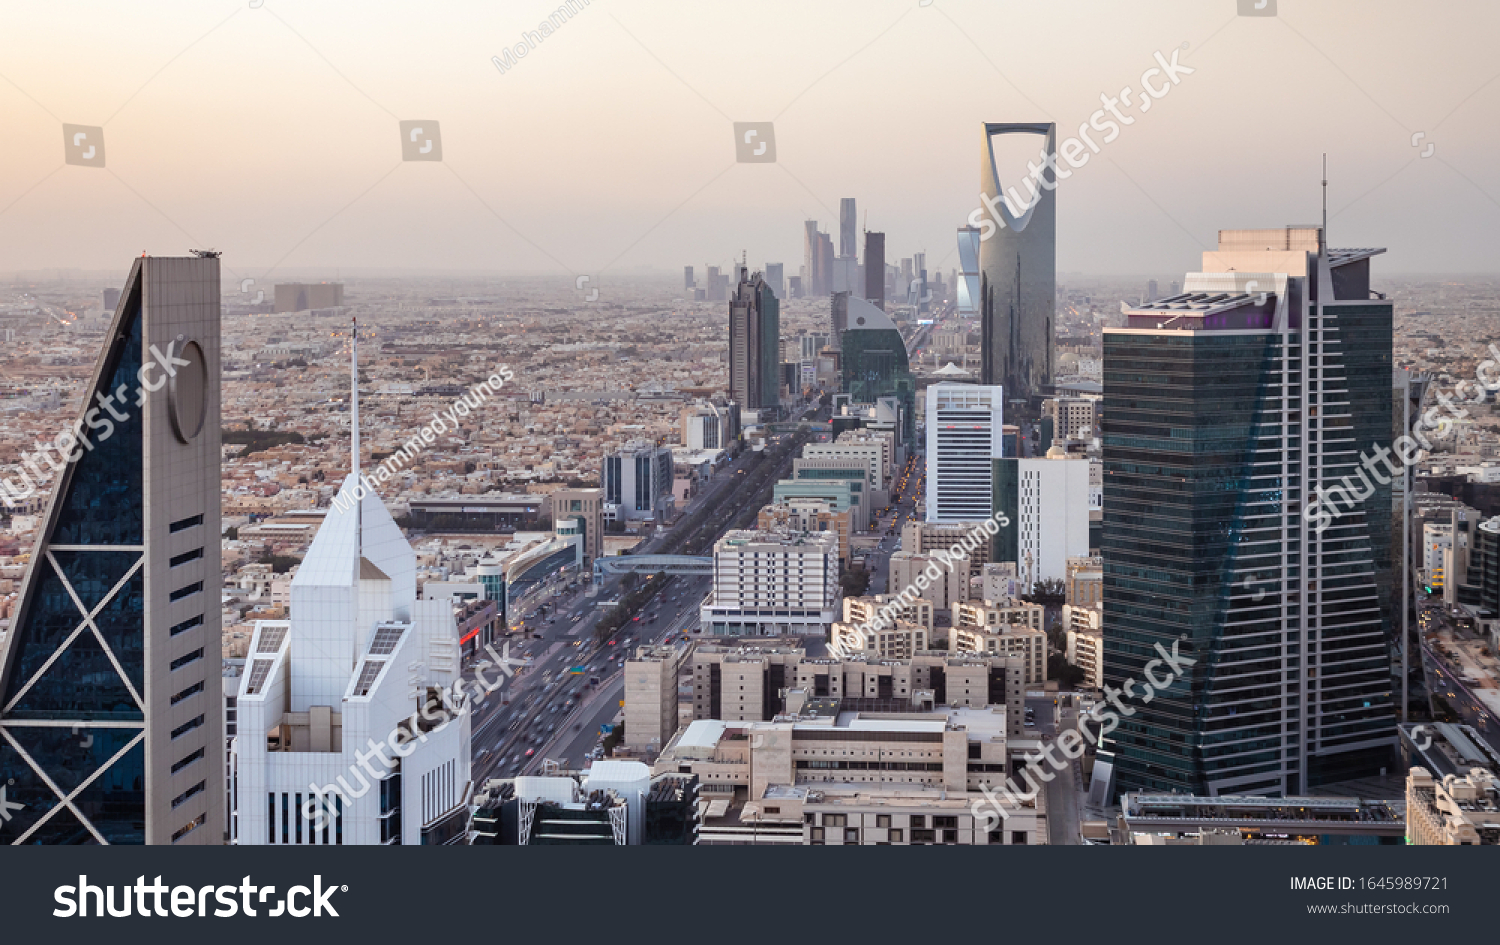 Kingdom of Saudi Arabia Landscape by day - Riyadh Tower Kingdom Center - Kingdom Tower - Riyadh skyline - Riyadh by day #1645989721